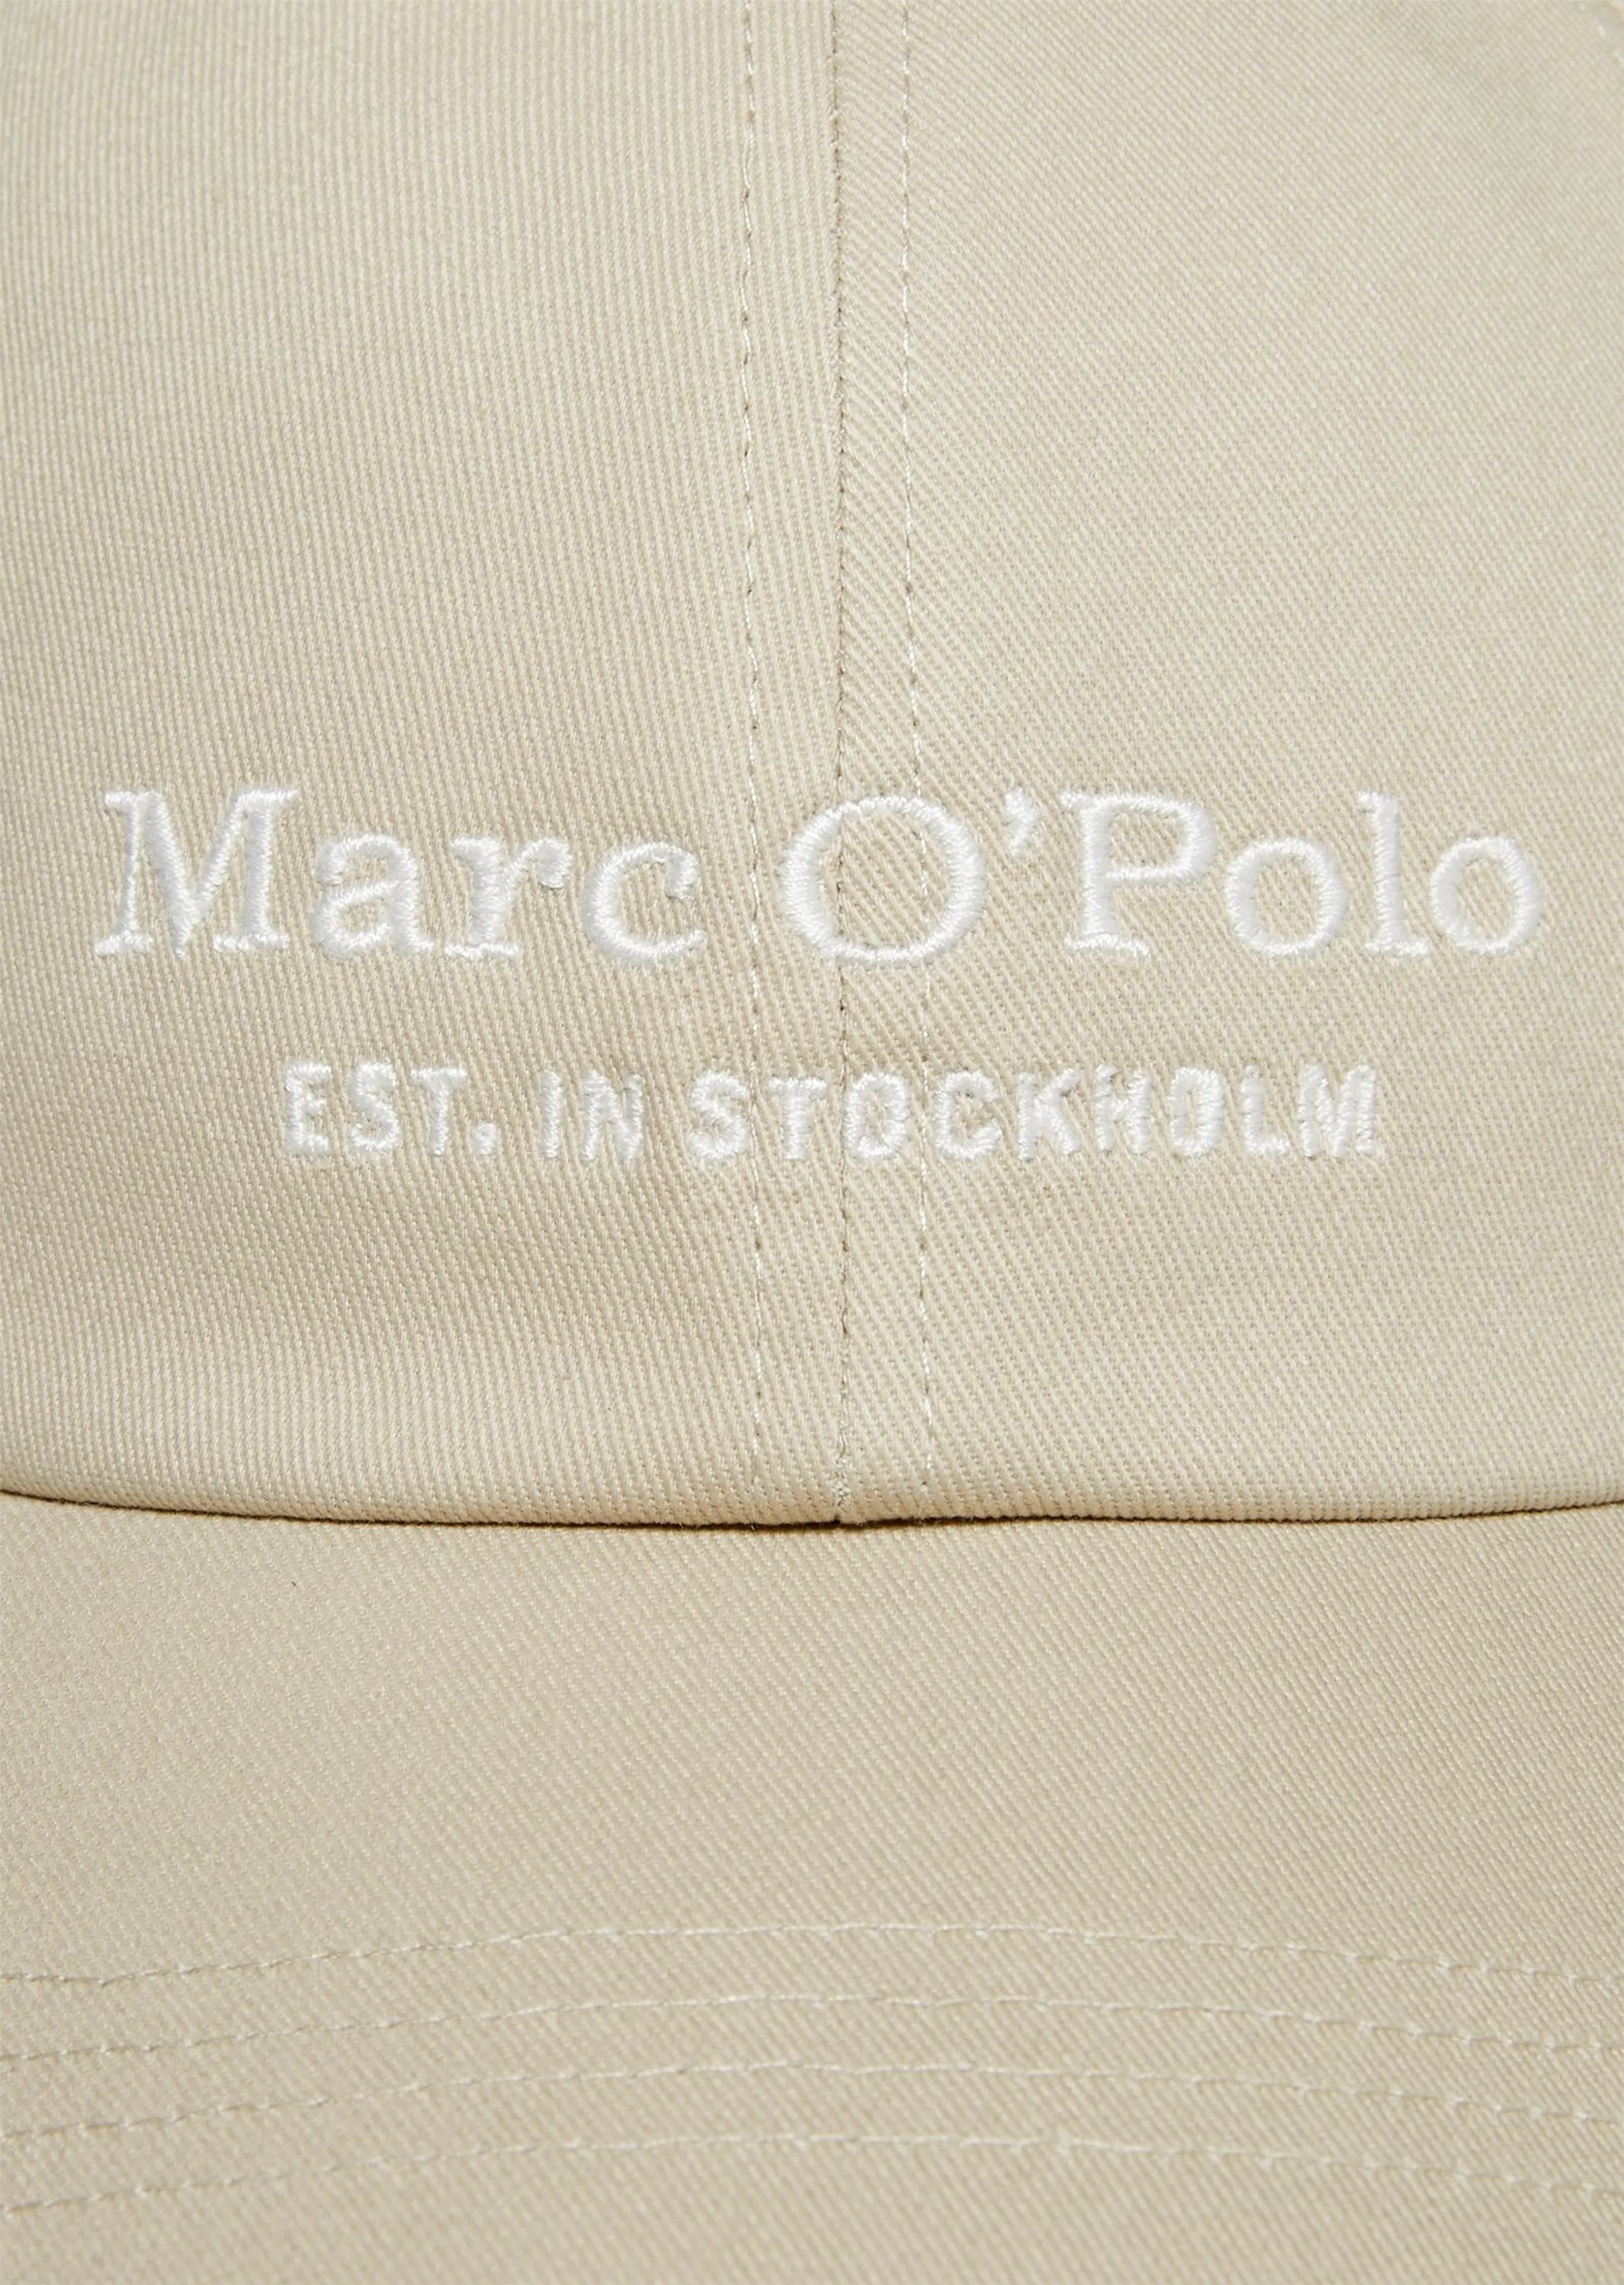 Marc O'Polo M22806801076 lippalakki